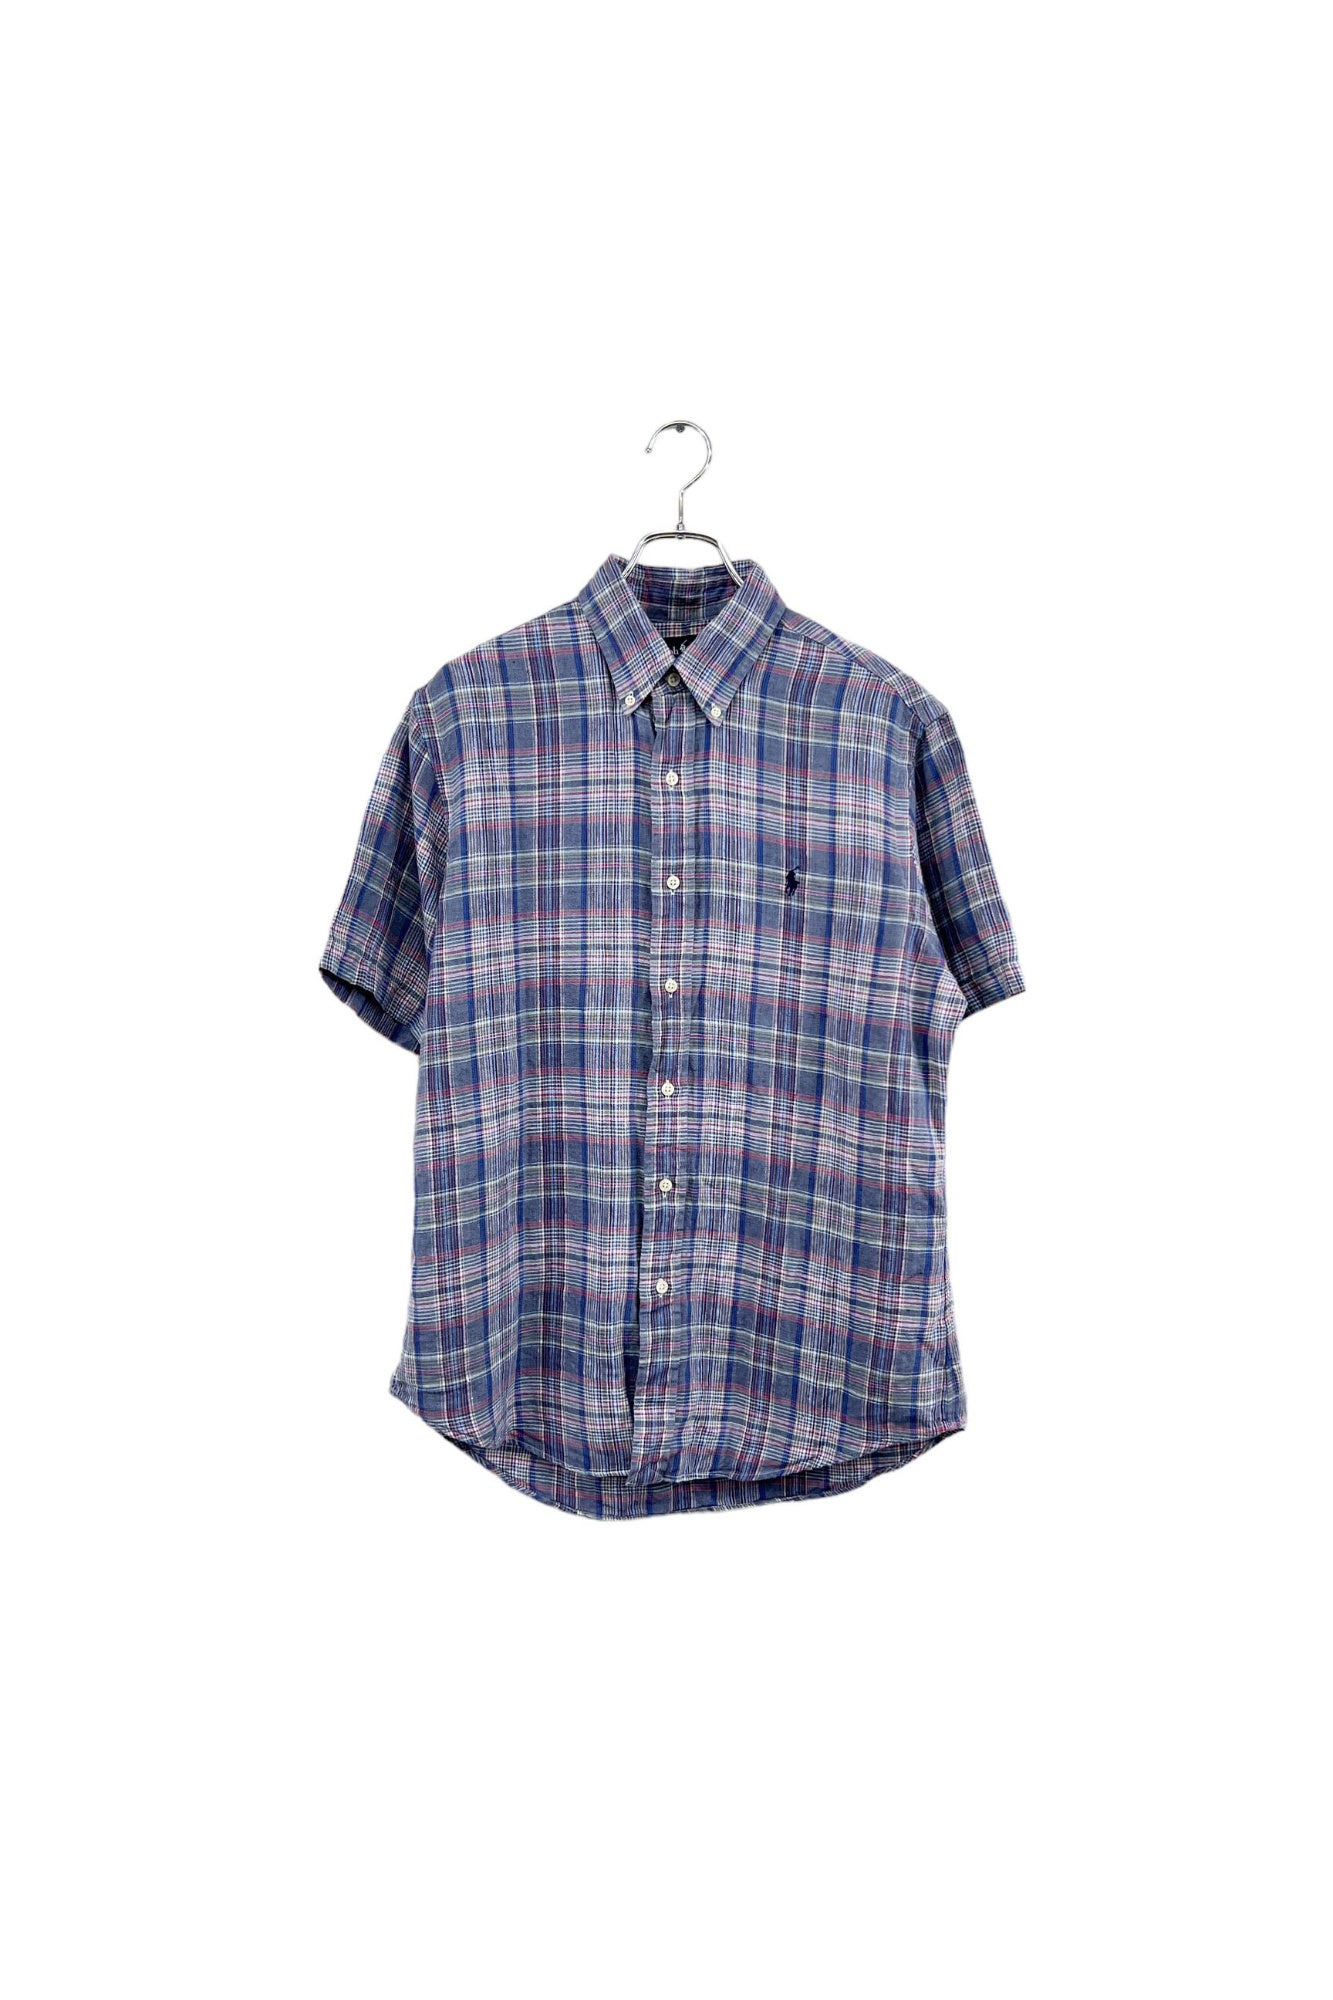 90 年代 Ralph Lauren 亚麻格纹衬衫